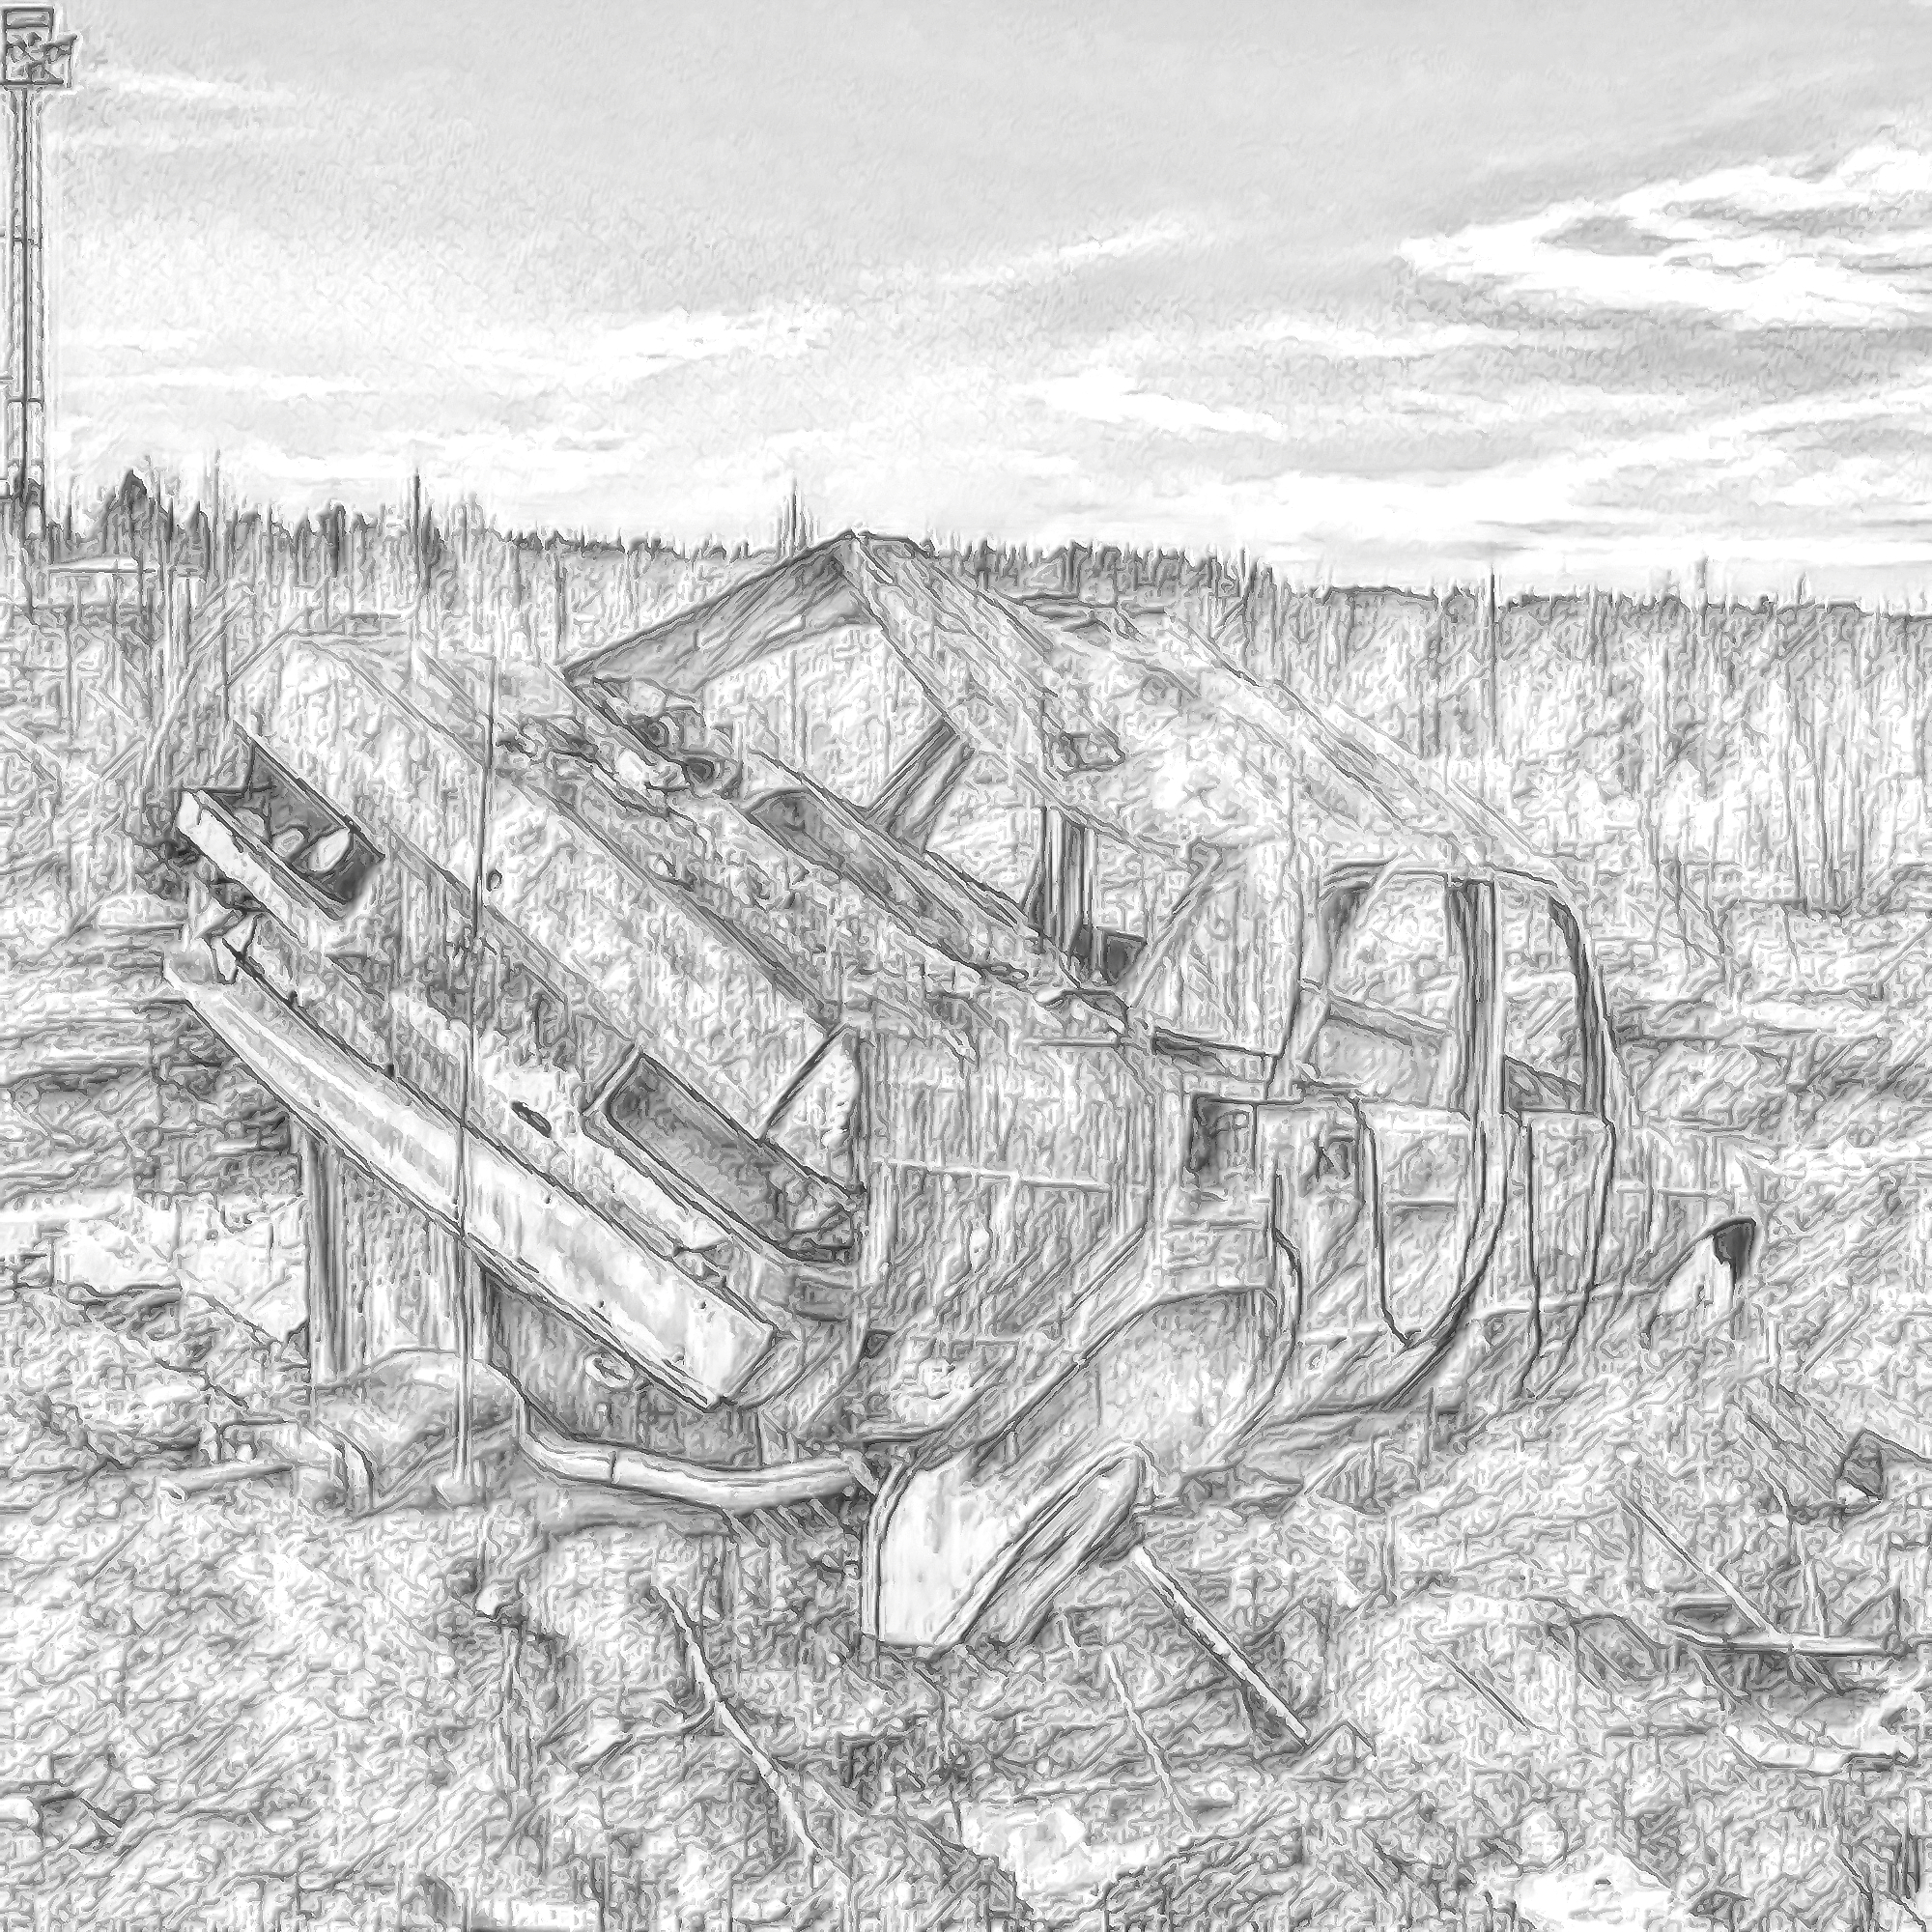 廃棄された車と瓦礫と寂しい夕日空 モノクロ